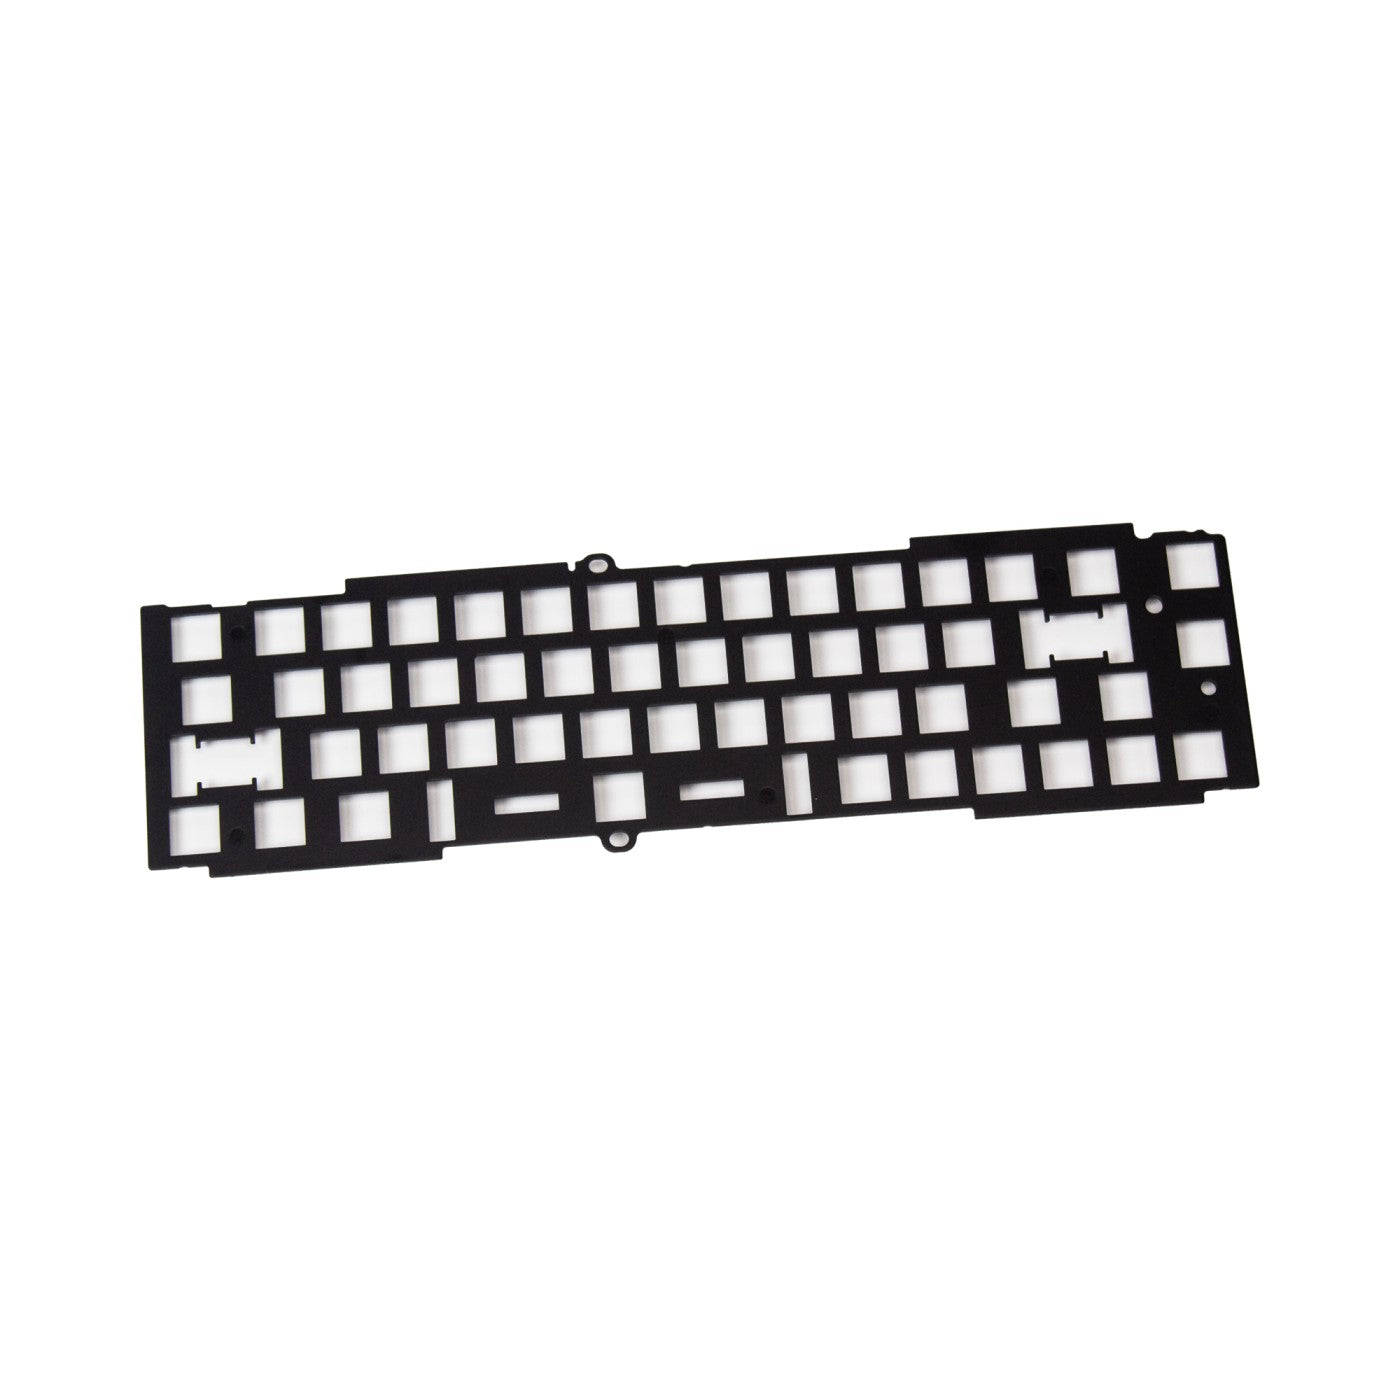 Keychron Q9 Keyboard Aluminum Plate ANSI Layout